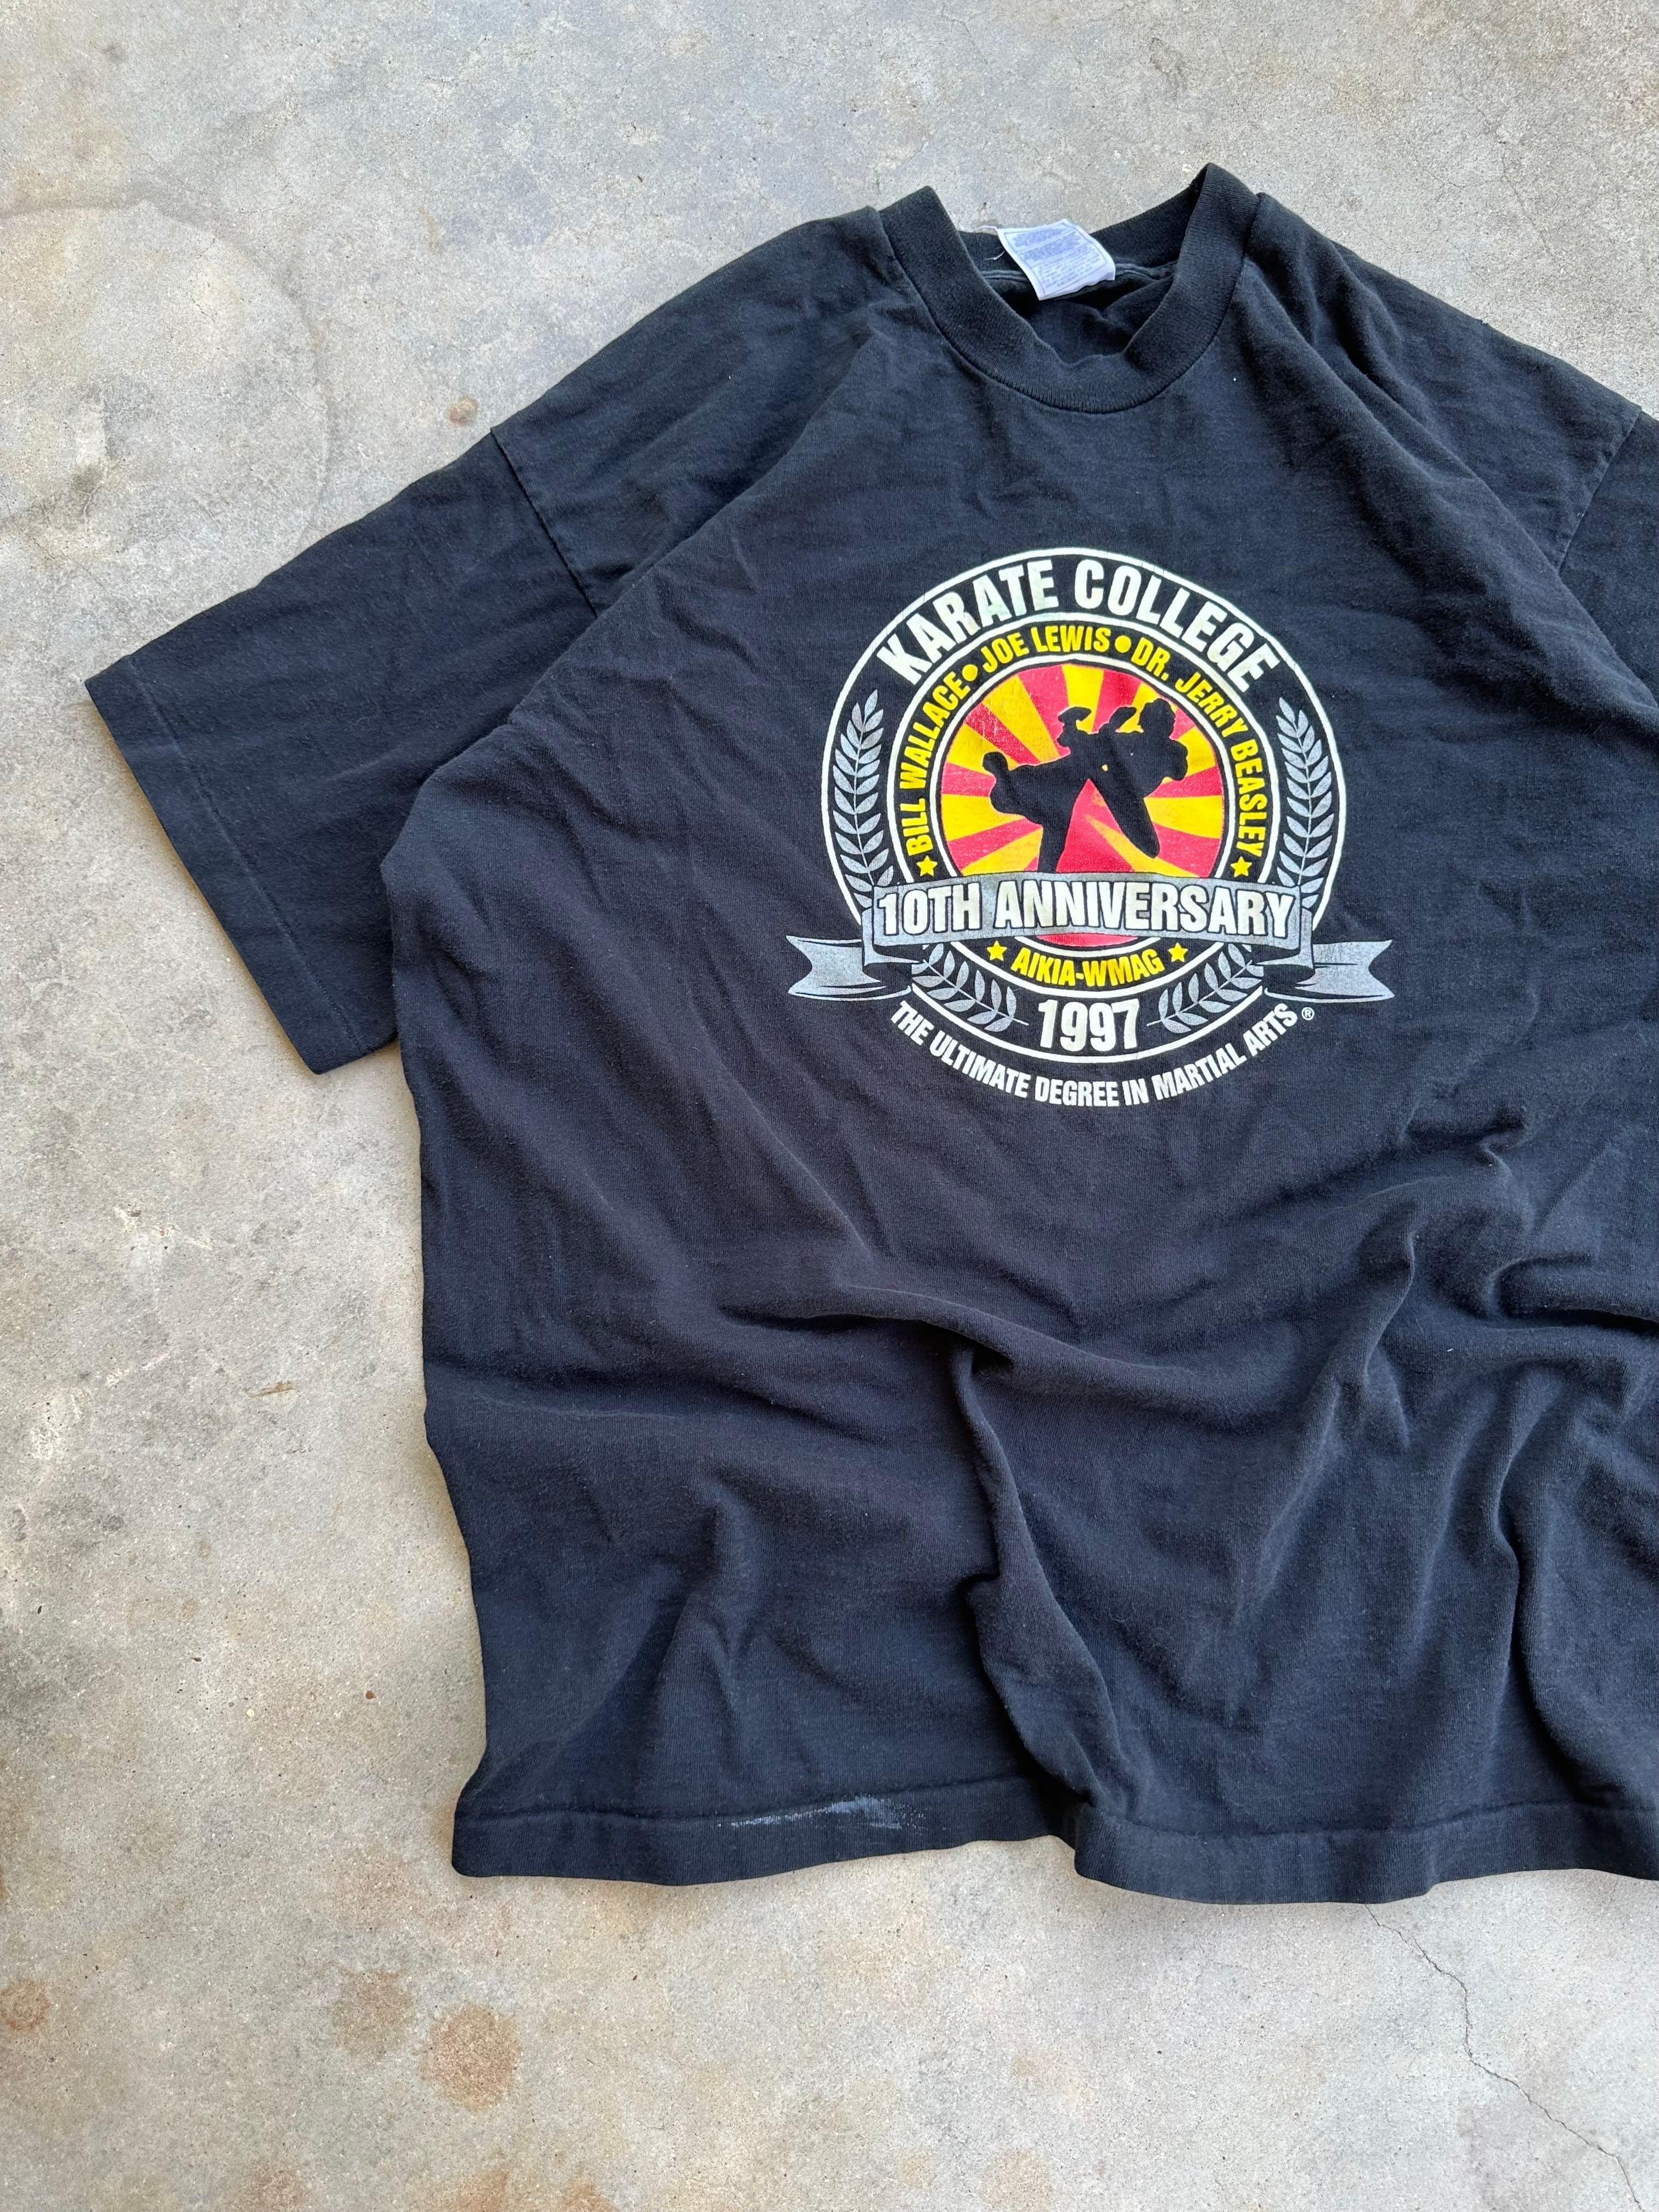 1997 Karate College Paint Splatter T-Shirt